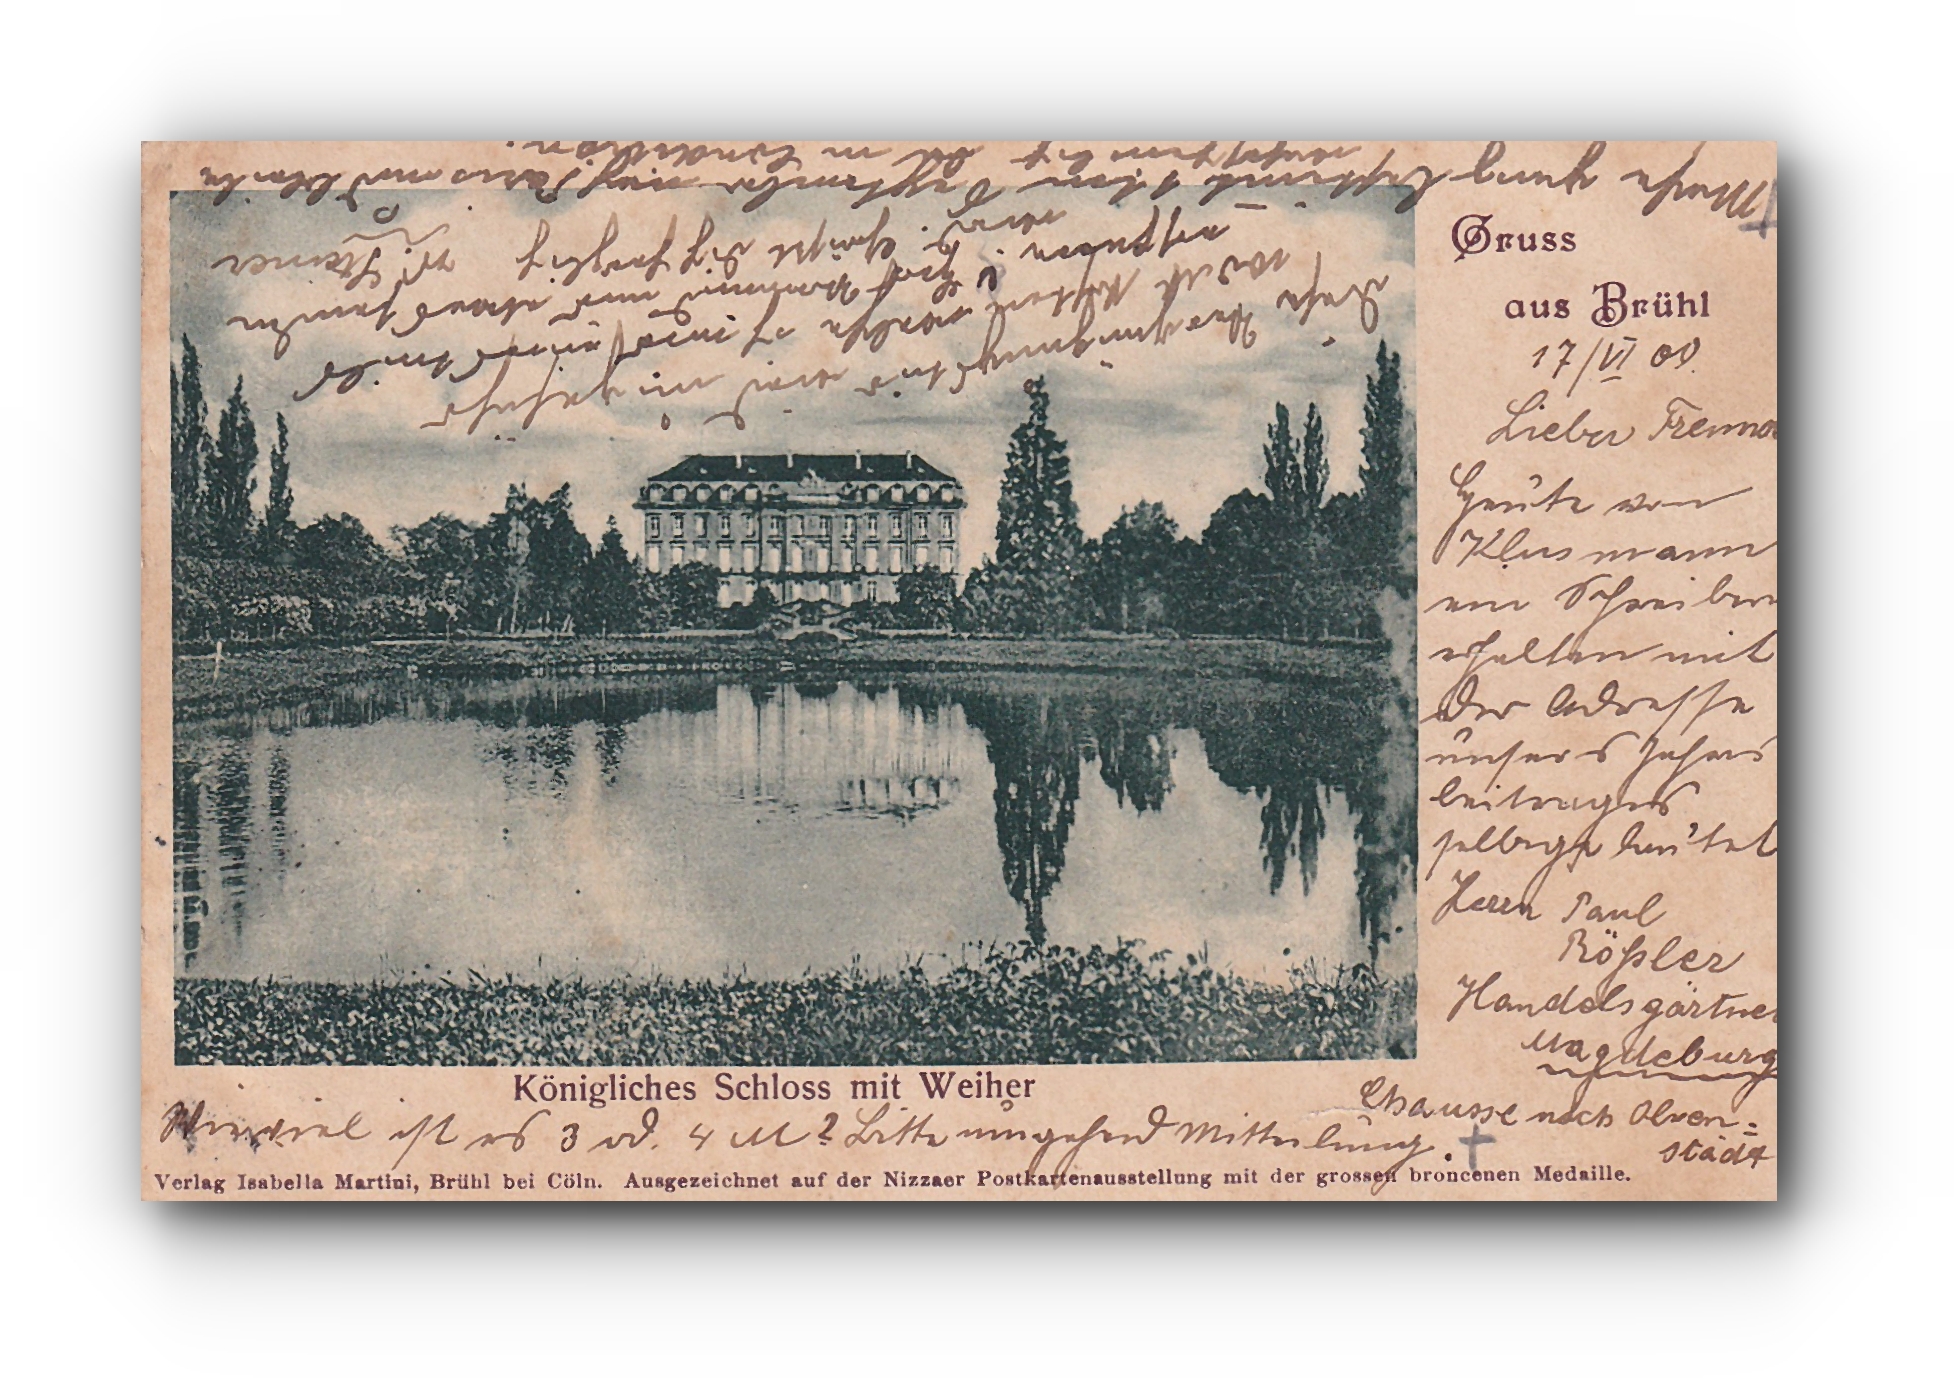 - Königliches Schloss mit Weiher - Gruss aus BRÜHL - 17.06.1900 -